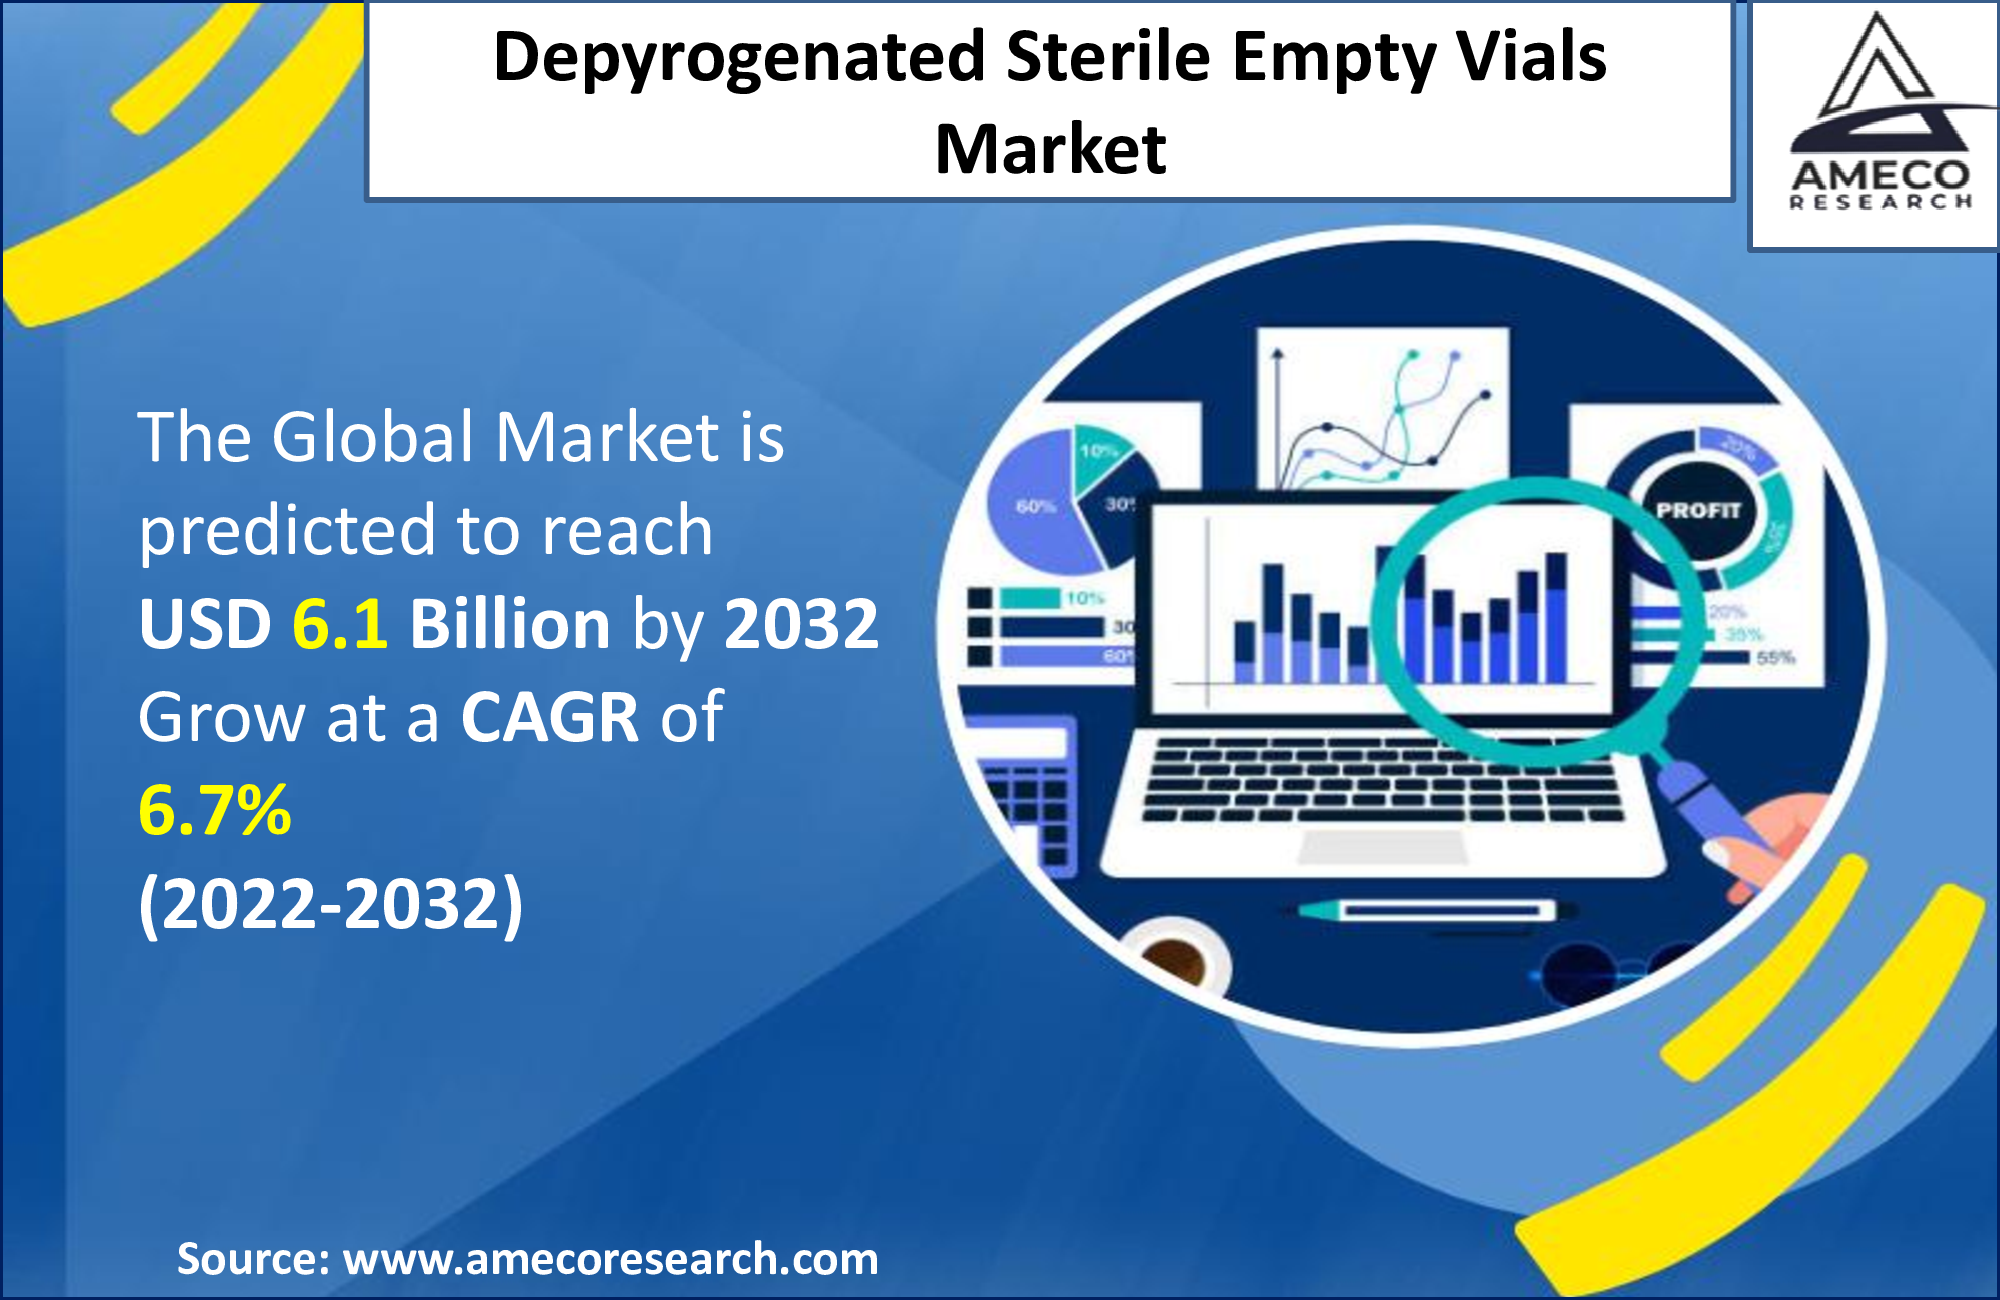 Depyrogenated Sterile Empty Vials Market